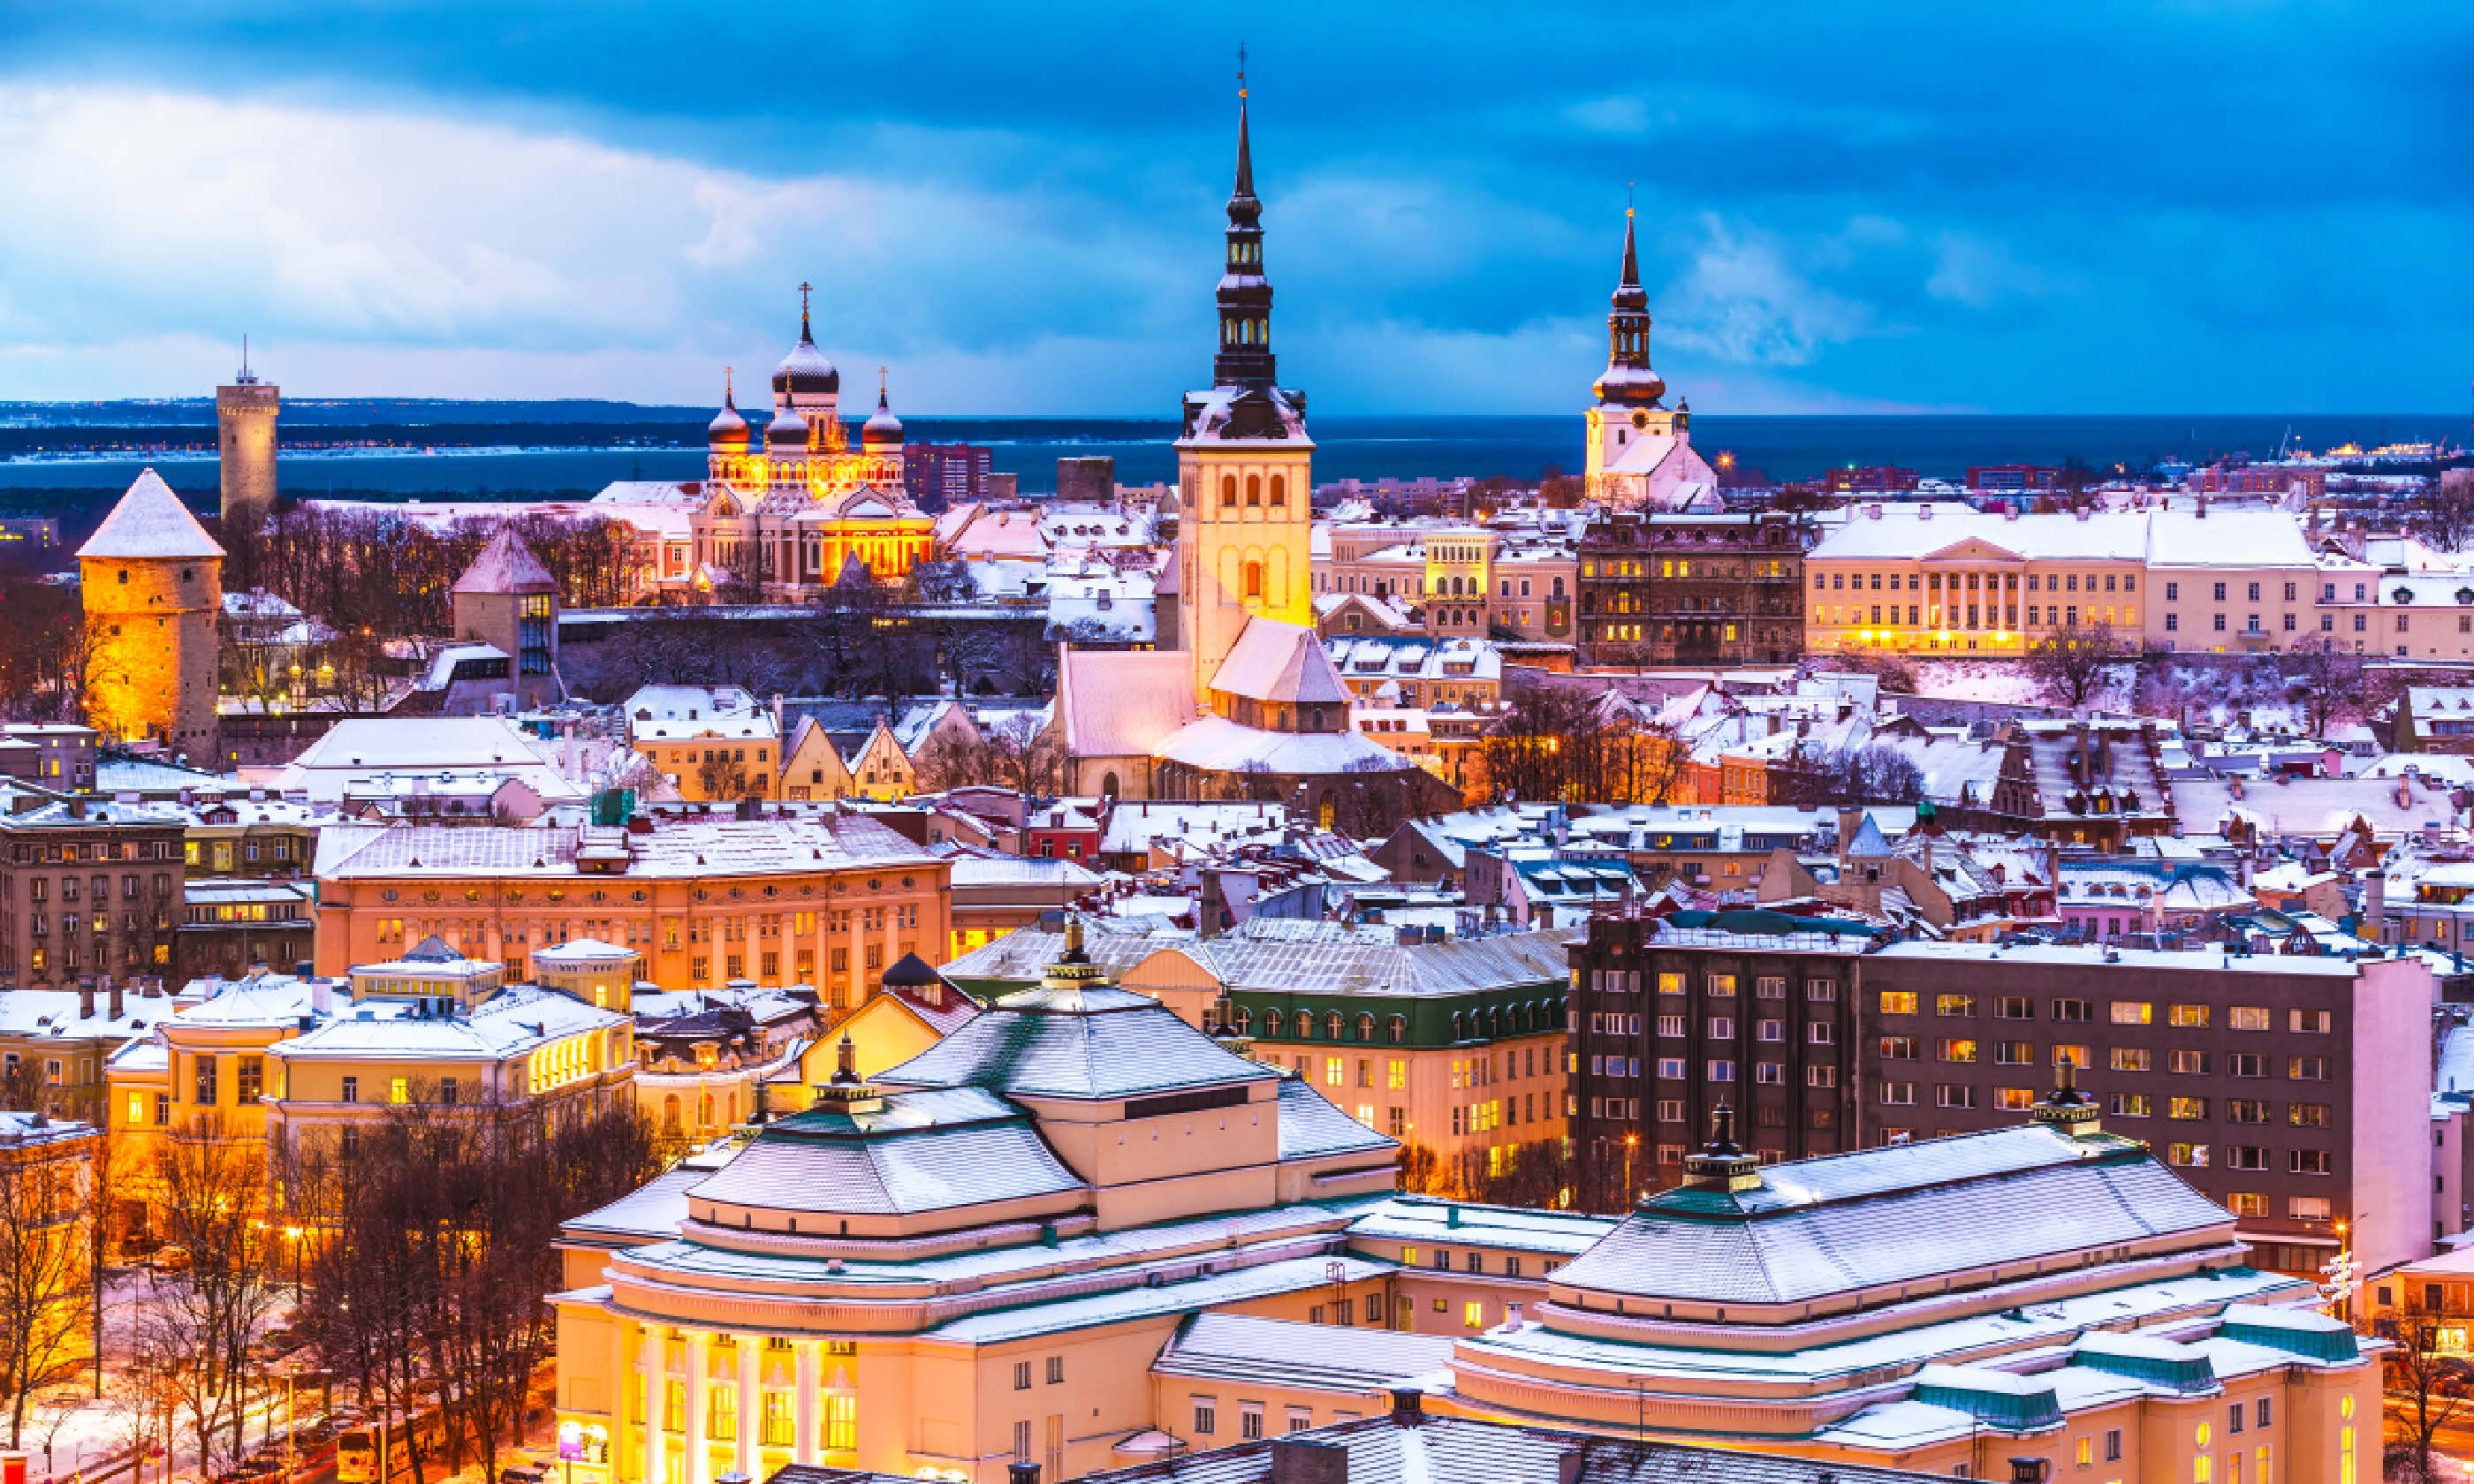 Tallinn, Estonia (Shutterstock)